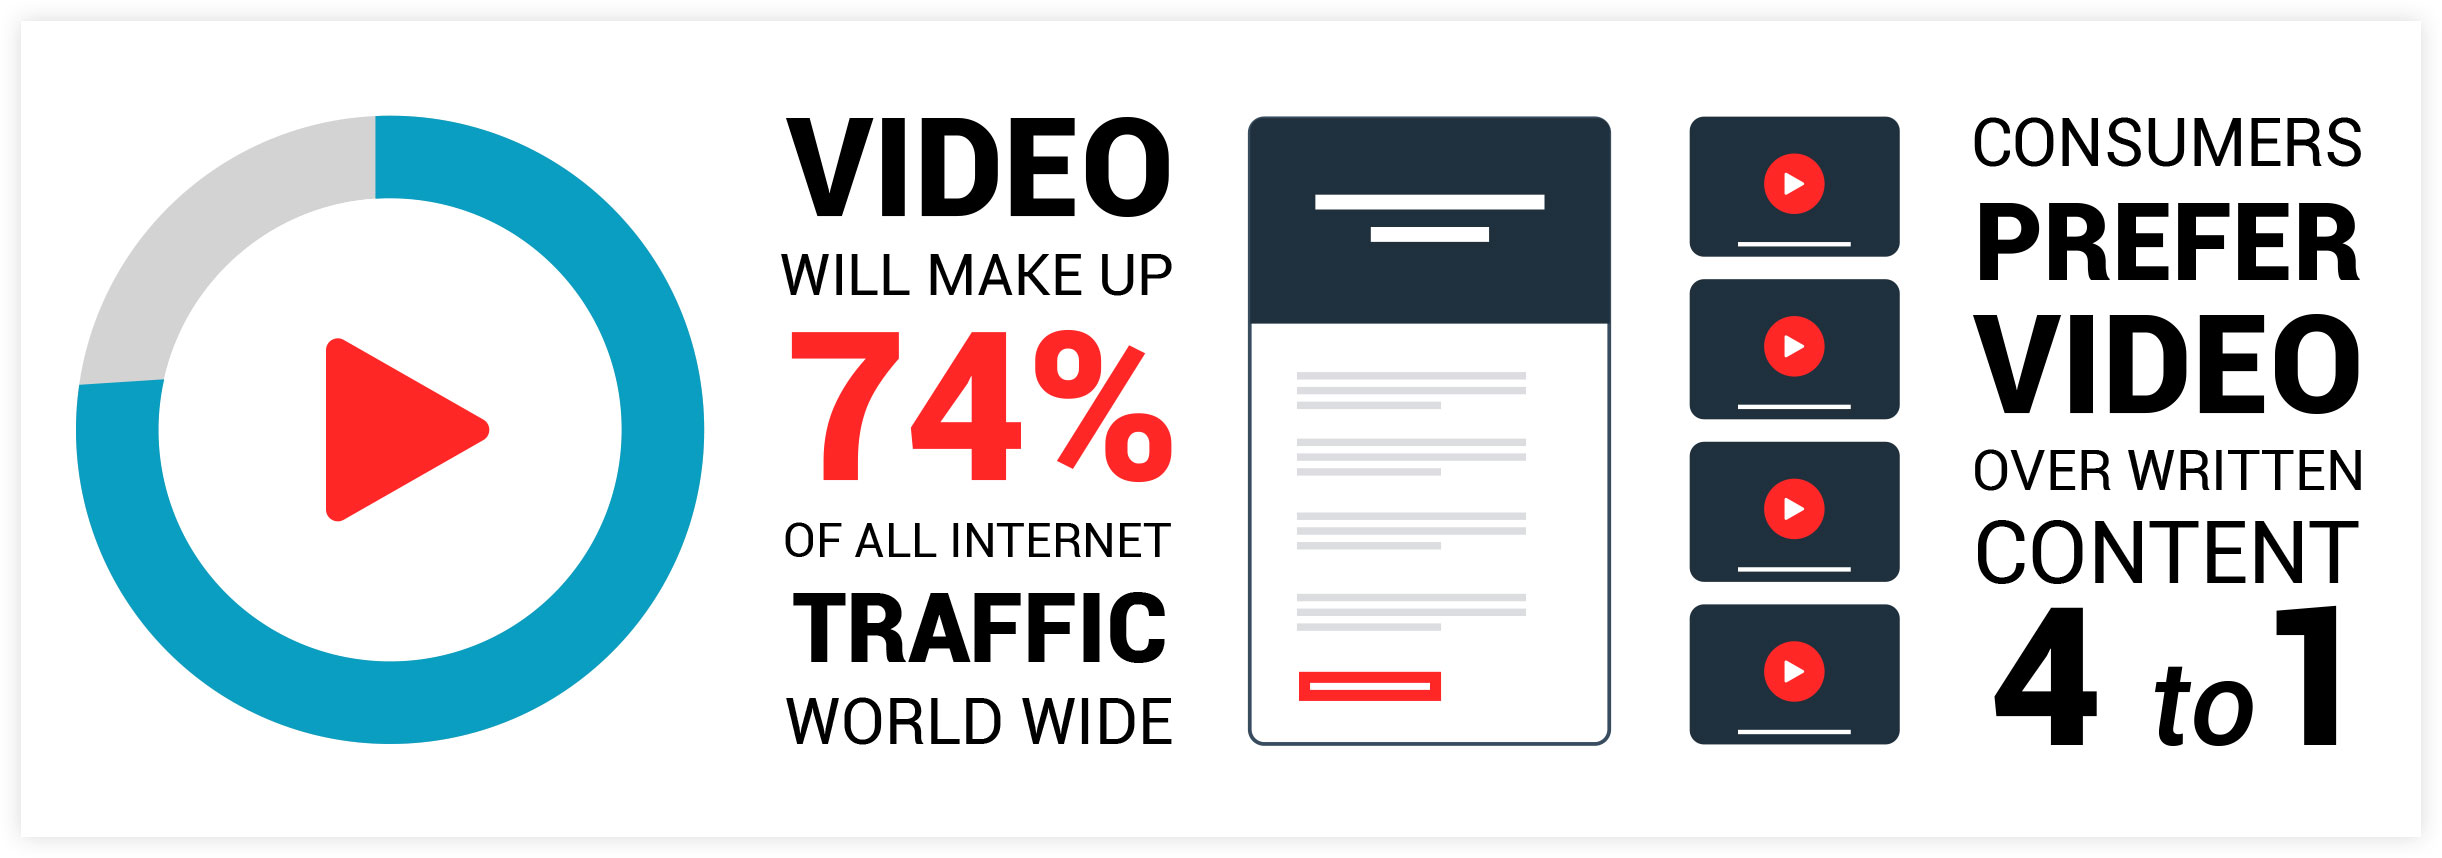 Statistiche di marketing video: numeri di traffico dei video di YouTube